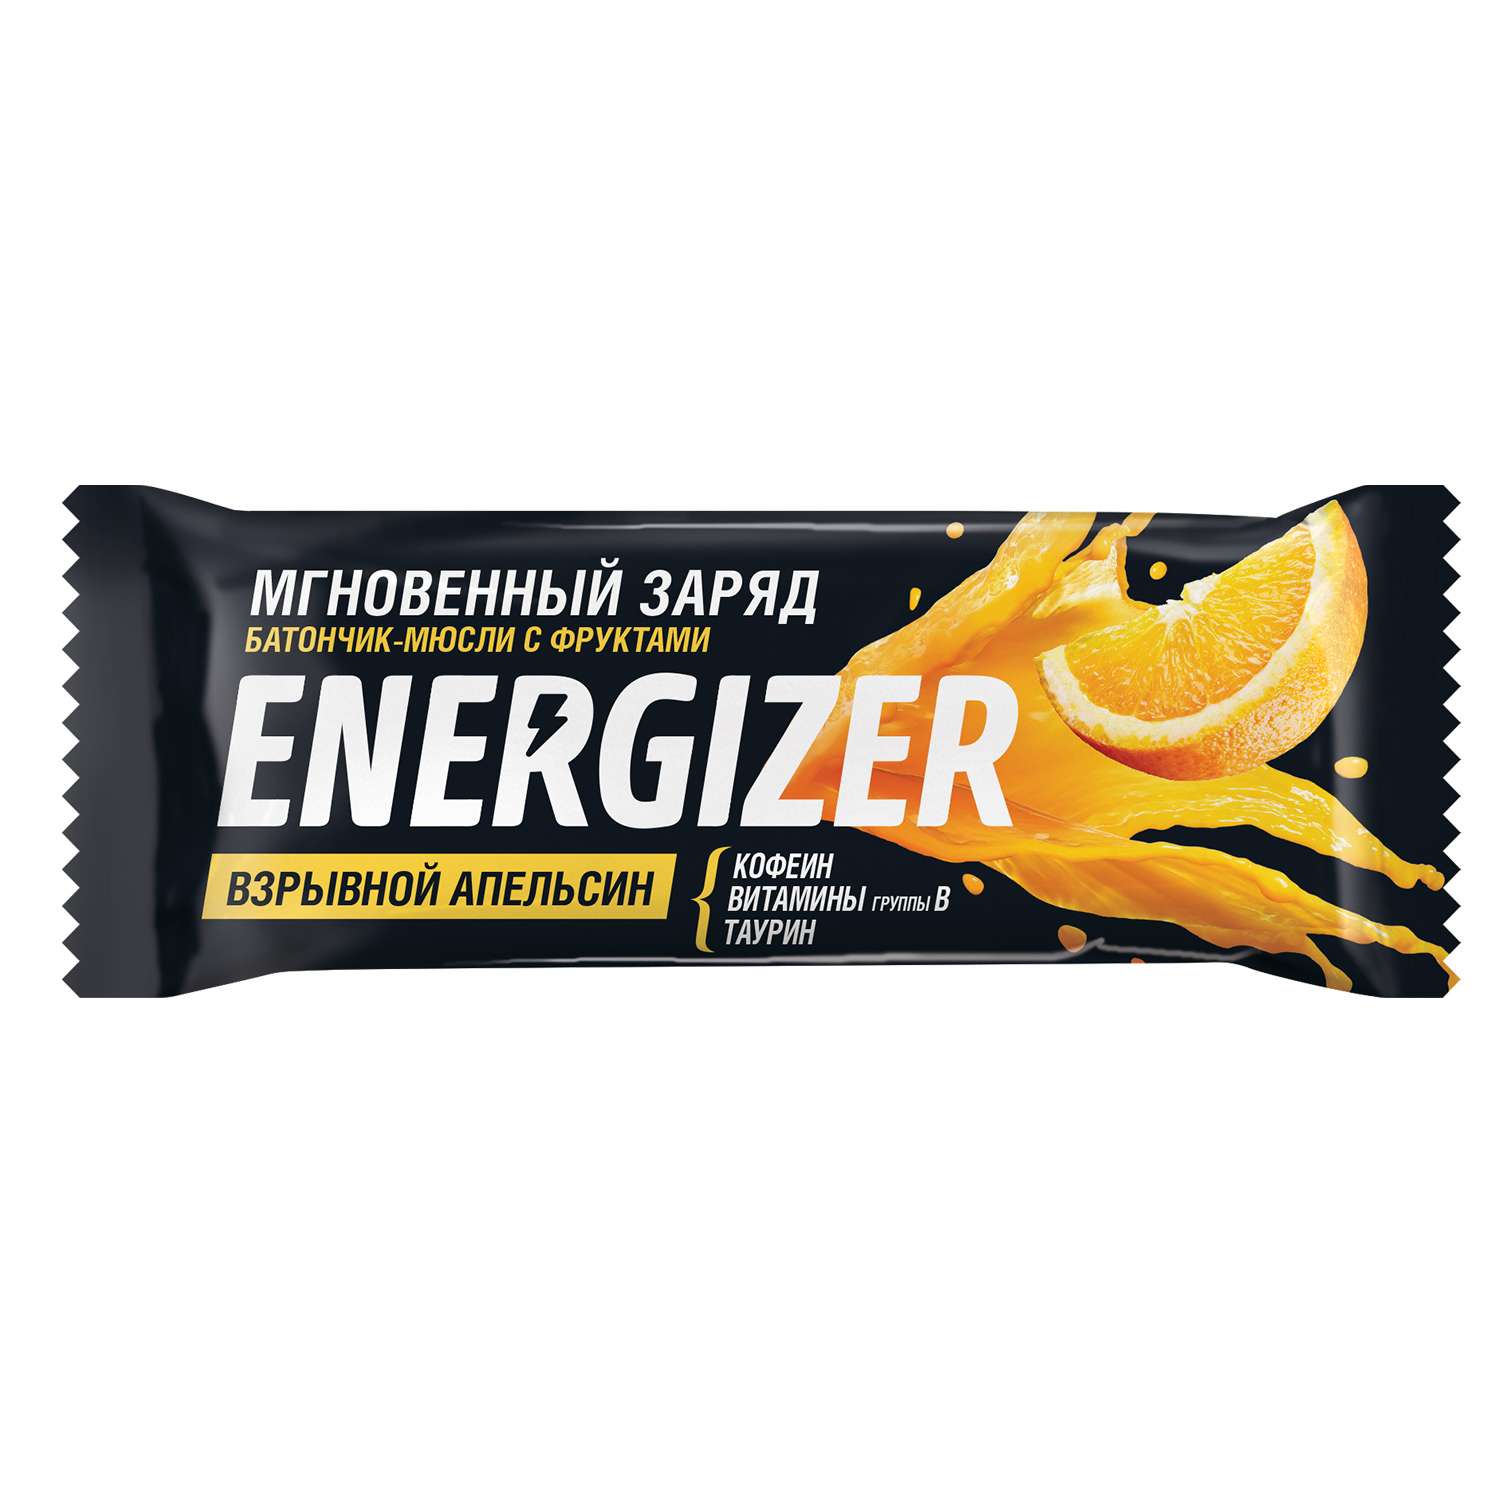 Батончик-мюсли Леовит Energizer с фруктами взрывной апельсин 40г - фото 1